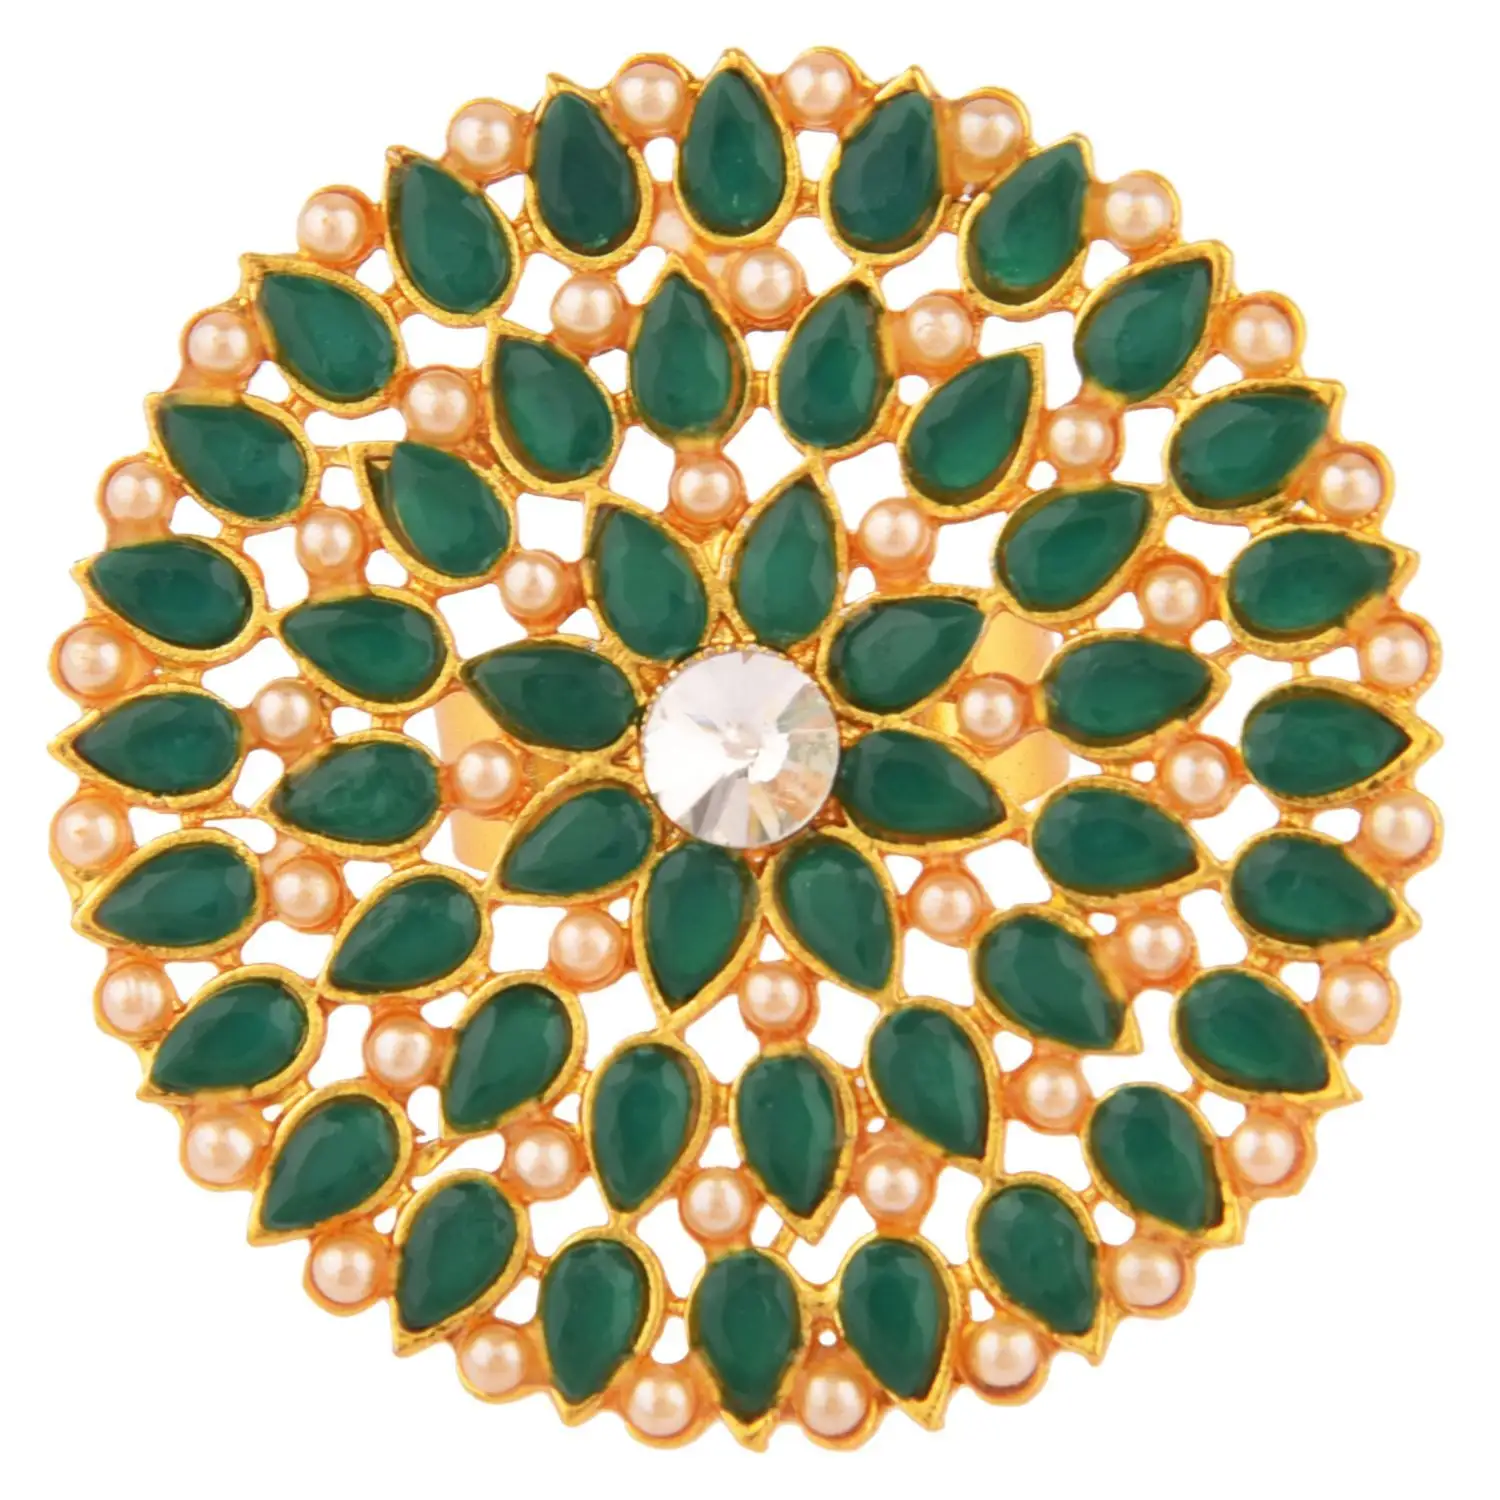 인도 보석 제조 업체 전통적인 신부 골드 도금 크리스탈 가짜 진주 큰 손가락 반지, 녹색